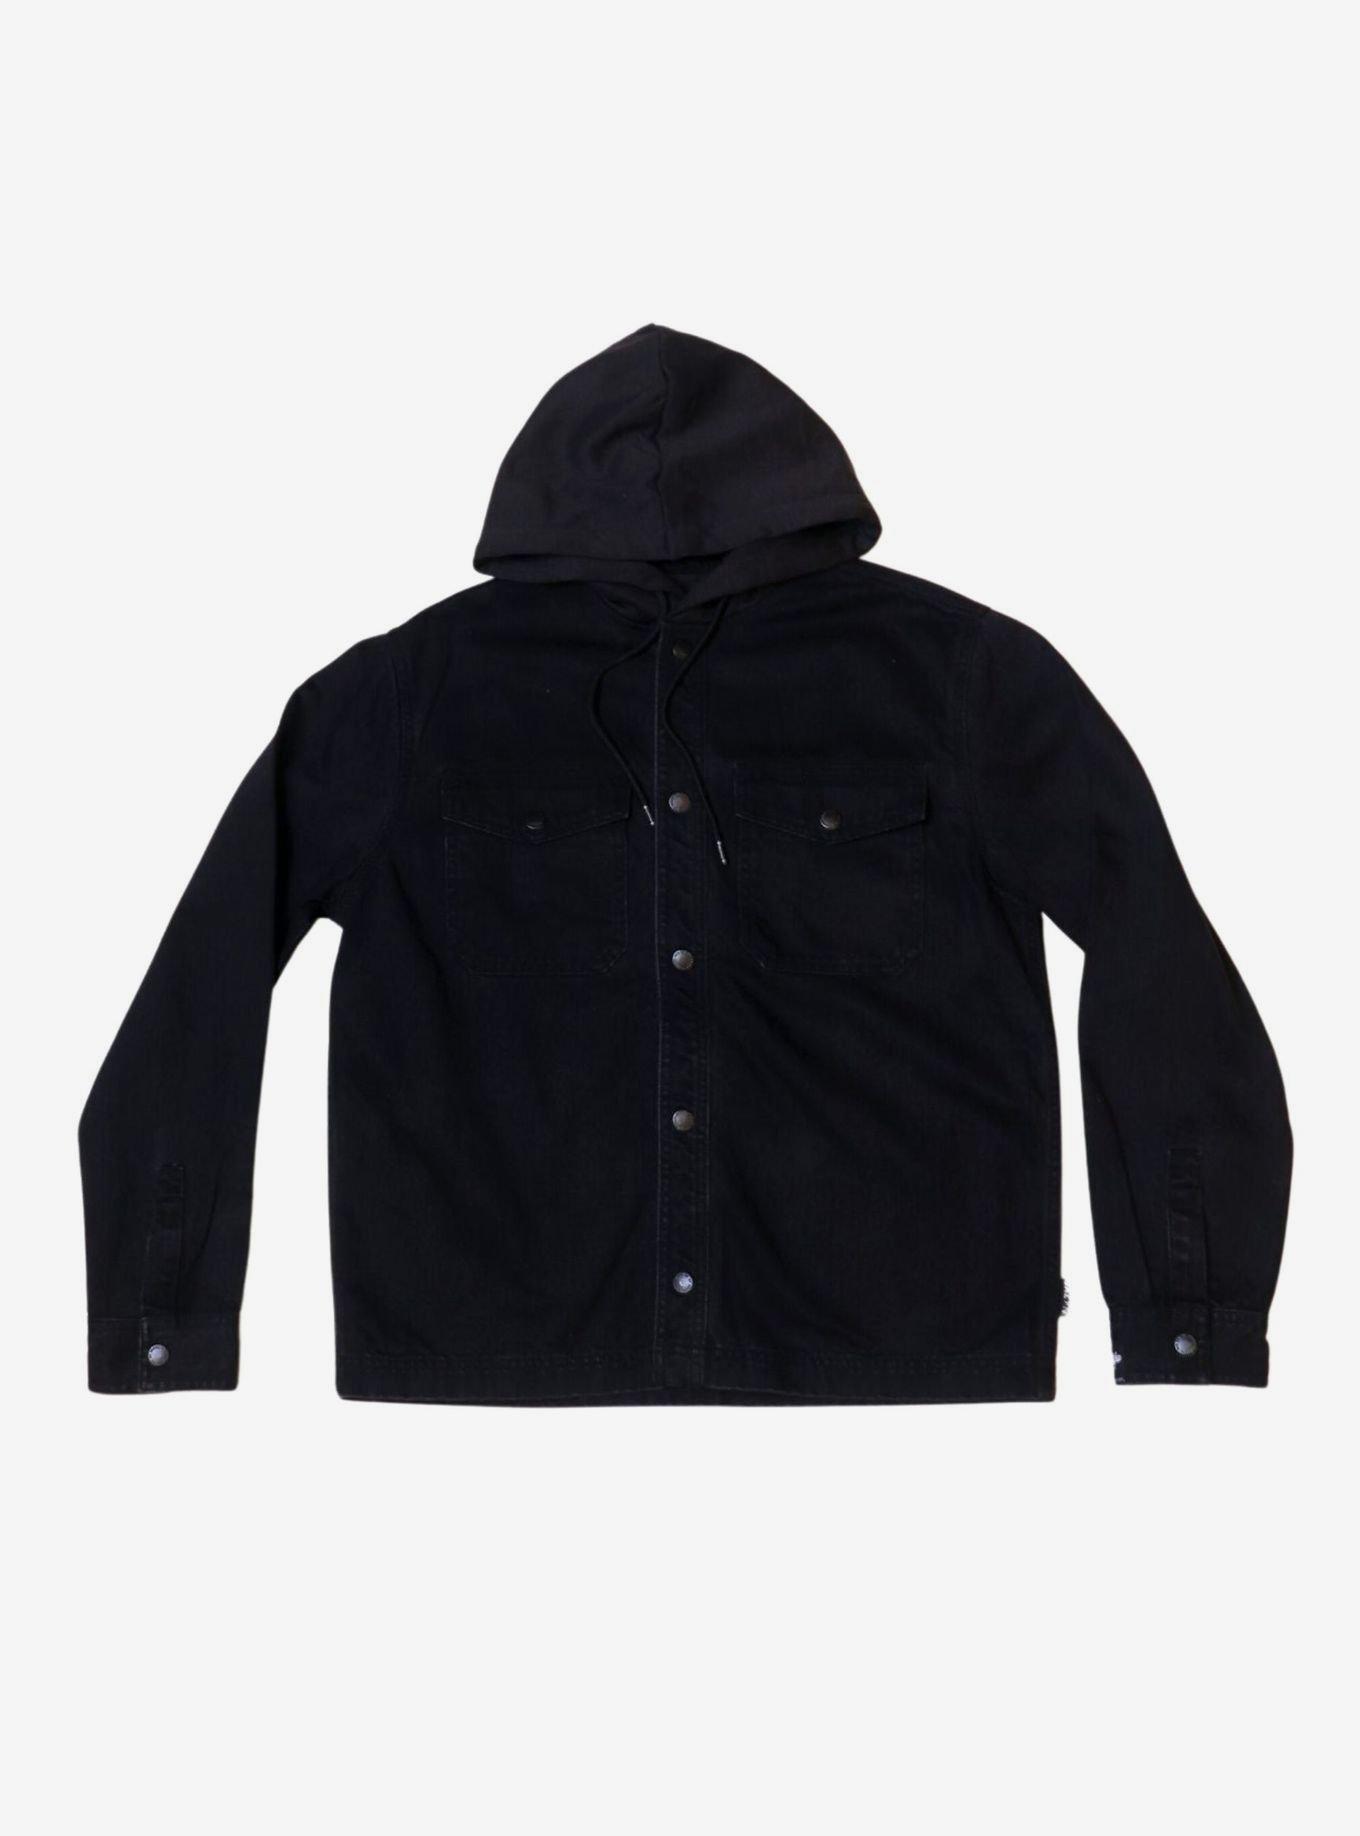 Black Bull Denim Snap Front Hooded Jacket, BLACK, hi-res